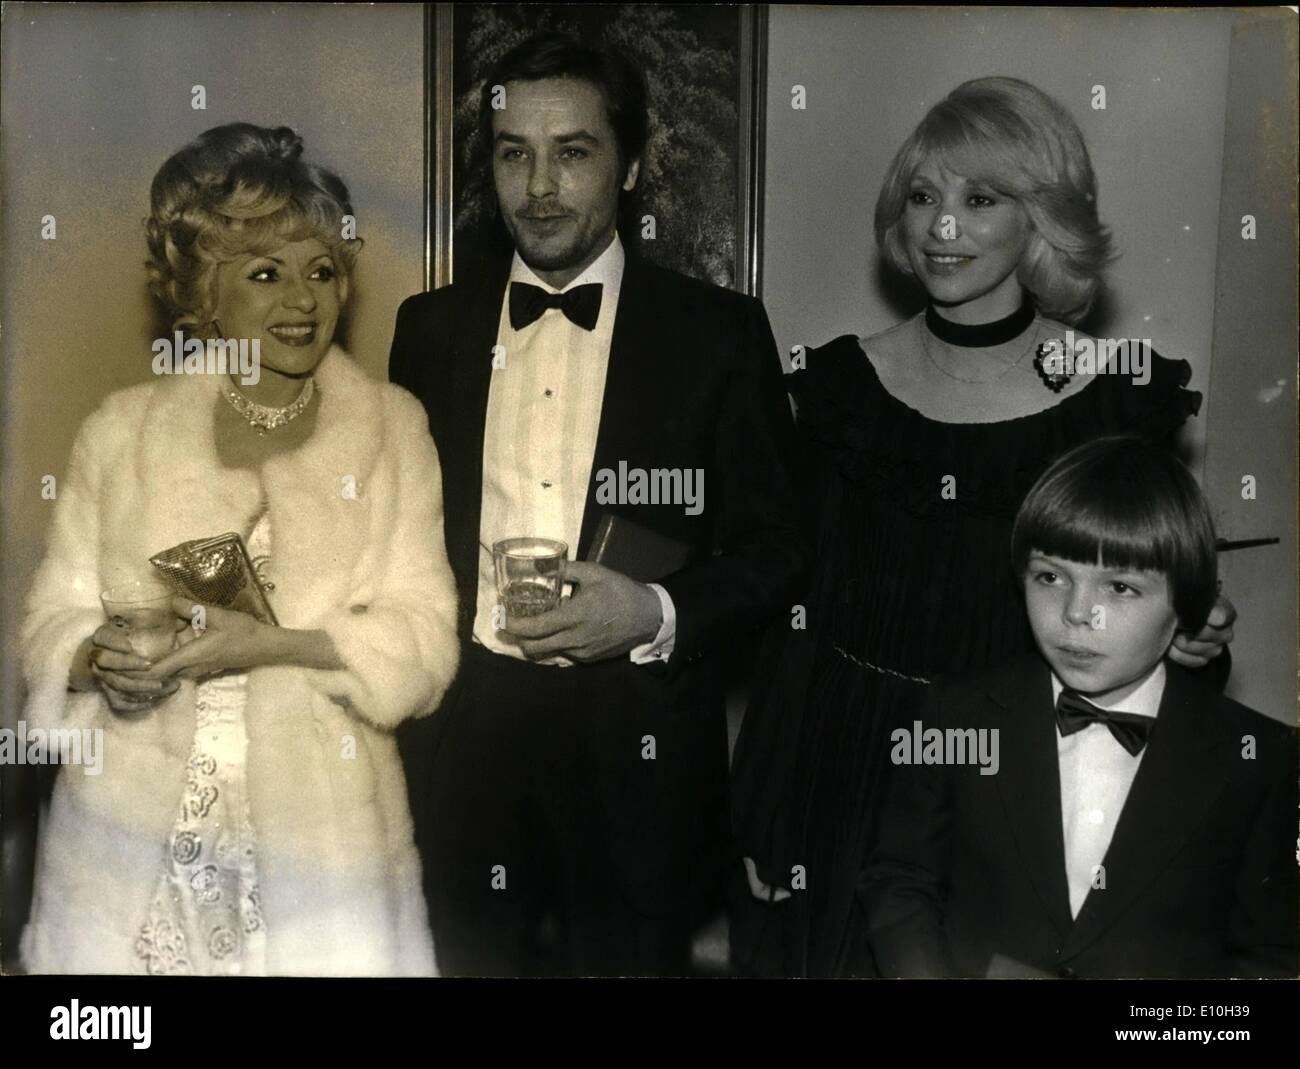 11 novembre 1972 - Nuit du Cinéma Prix : Le Cinéma ''nuit'' Oscars est allé à Anny Cordy, le célèbre chanteur comédien pour sa agissant en ''Hello Dolly'', Alain Delon, acteur de l'écran français n° 1 pour l'ensemble de ses films, Mireille Darc pour son emprunt d'une ''Decoy Girl'' dans le film ''il était une fois un cop'' (il etait une fois un flic) et huit ans Herve Hullien qui agissait comme son fils. Photo montre l à R. Anny Cordy, Alain Delon, Mireille Darc et Jeunes Herve Hullien. Banque D'Images